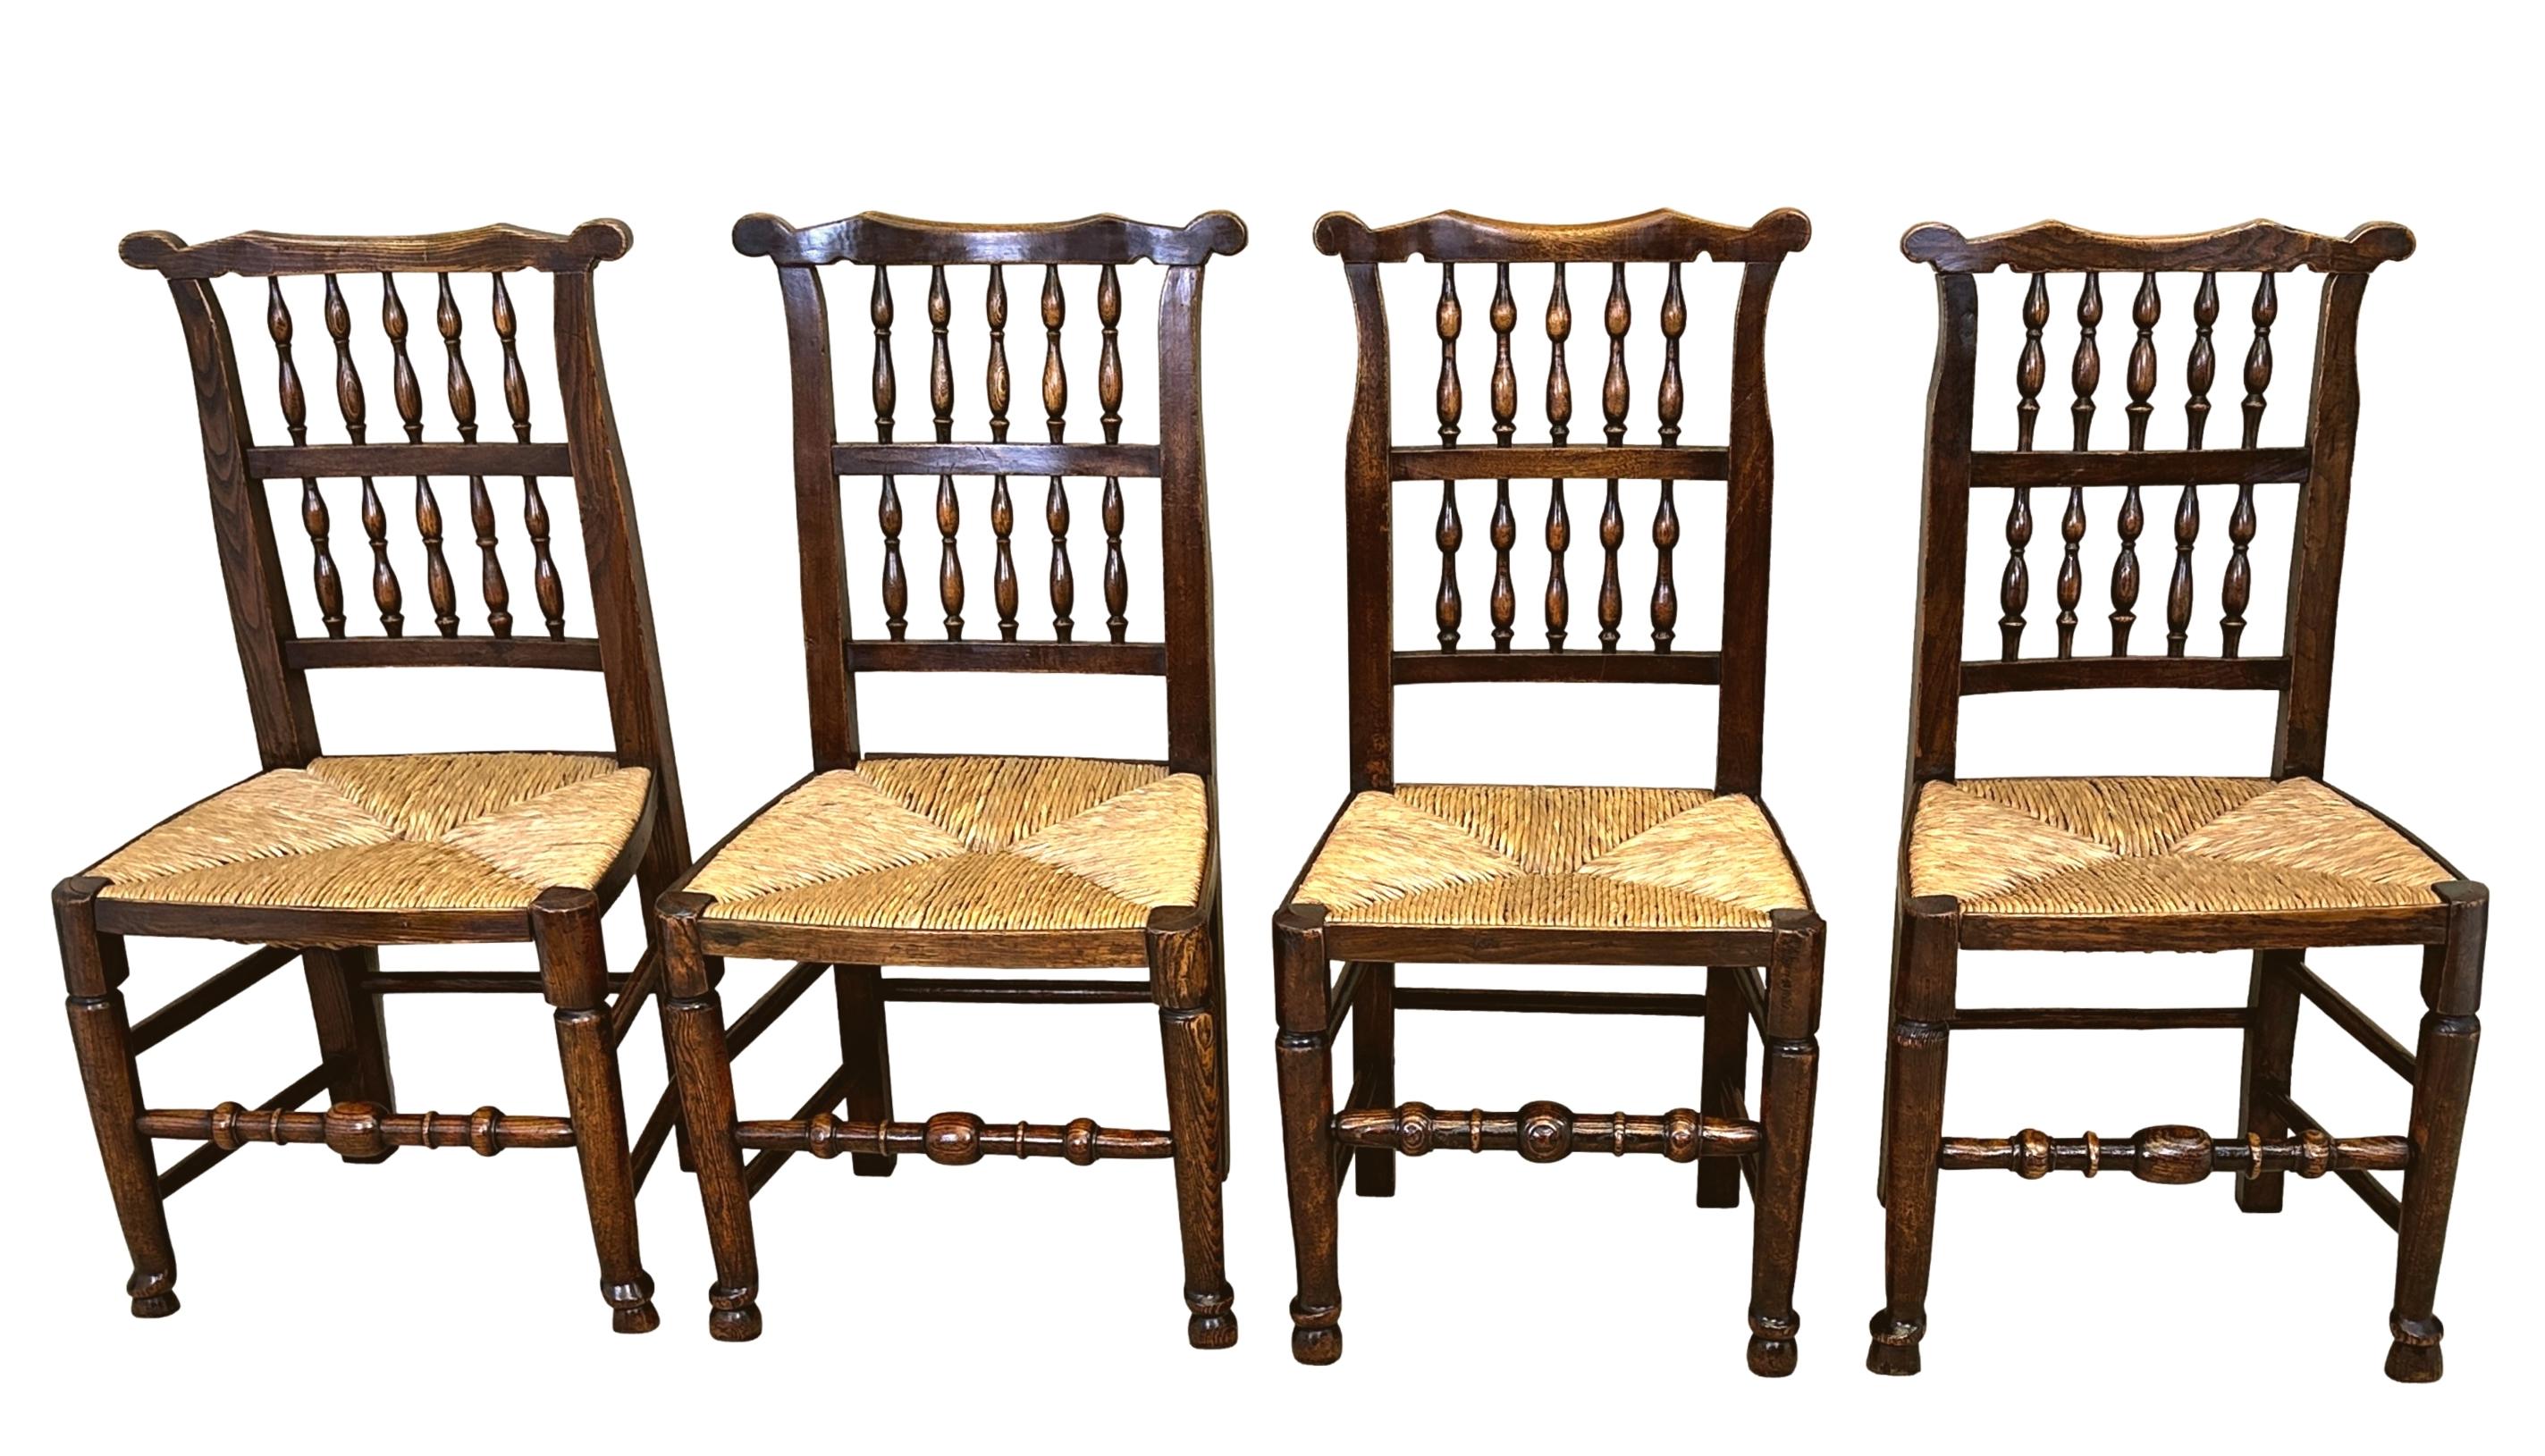 Eine äußerst attraktive frühen 19. Jahrhundert, Georgian, abgestimmt Satz von 10, Esche und Ulme, Bauernhaus Küche Esszimmerstühle mit seltenen Ohren zu geformten oberen Schiene von Double Row Spindlebacks, über Rushed Sitze auf eleganten